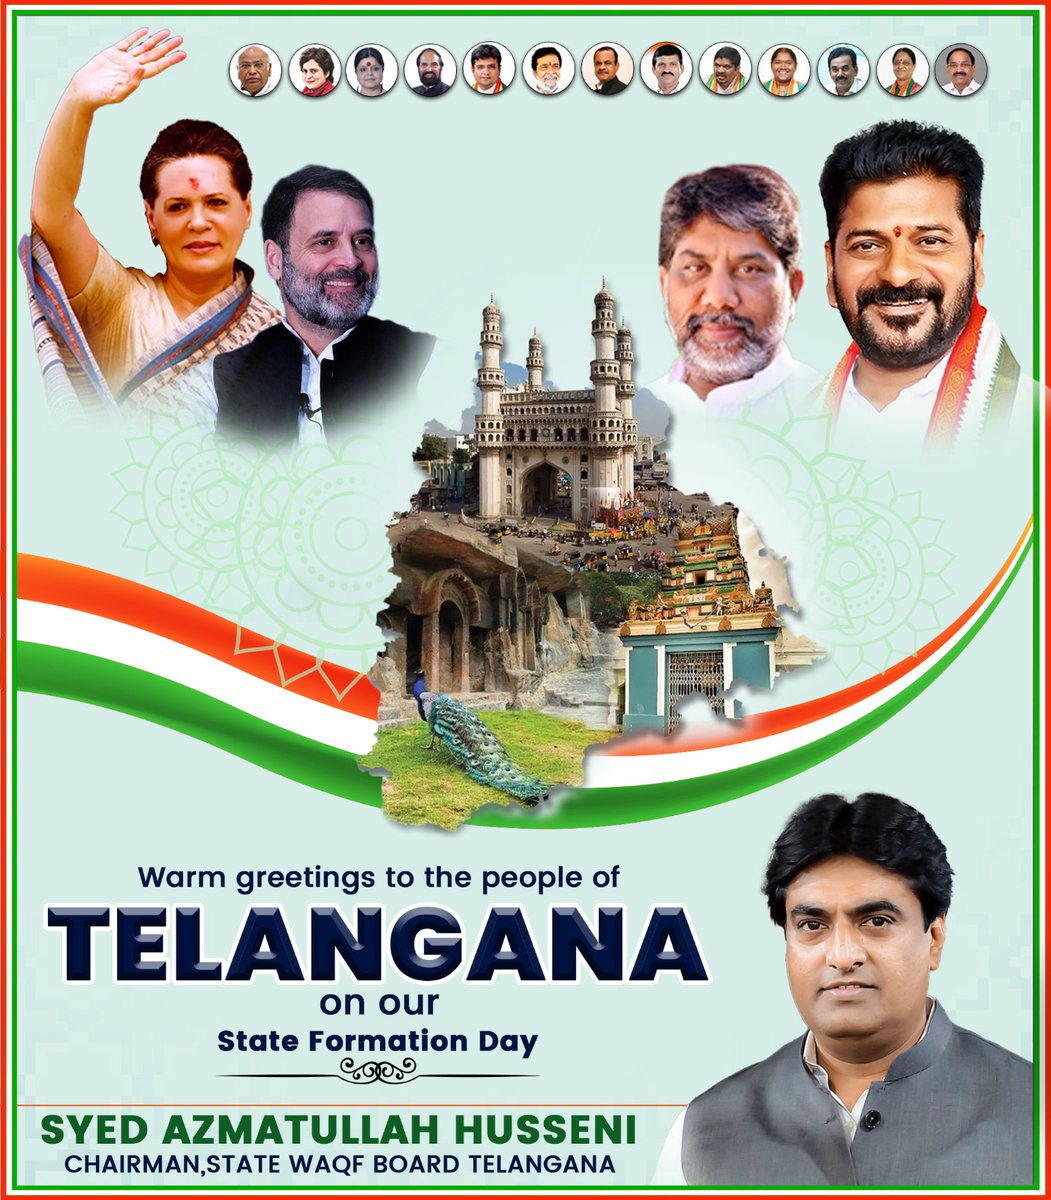 Celebrating Telangana pride & serving the community! Happy Telangana Formation Day from the State Waqf Board.

#TelanganaFormationDay #WaqfBoard #Azmatullahusseni #congress2024 #news #Hyderabad #Telangana #RahulGandhiVoiceOfIndia #NewsUpdate #RevanthReddycm